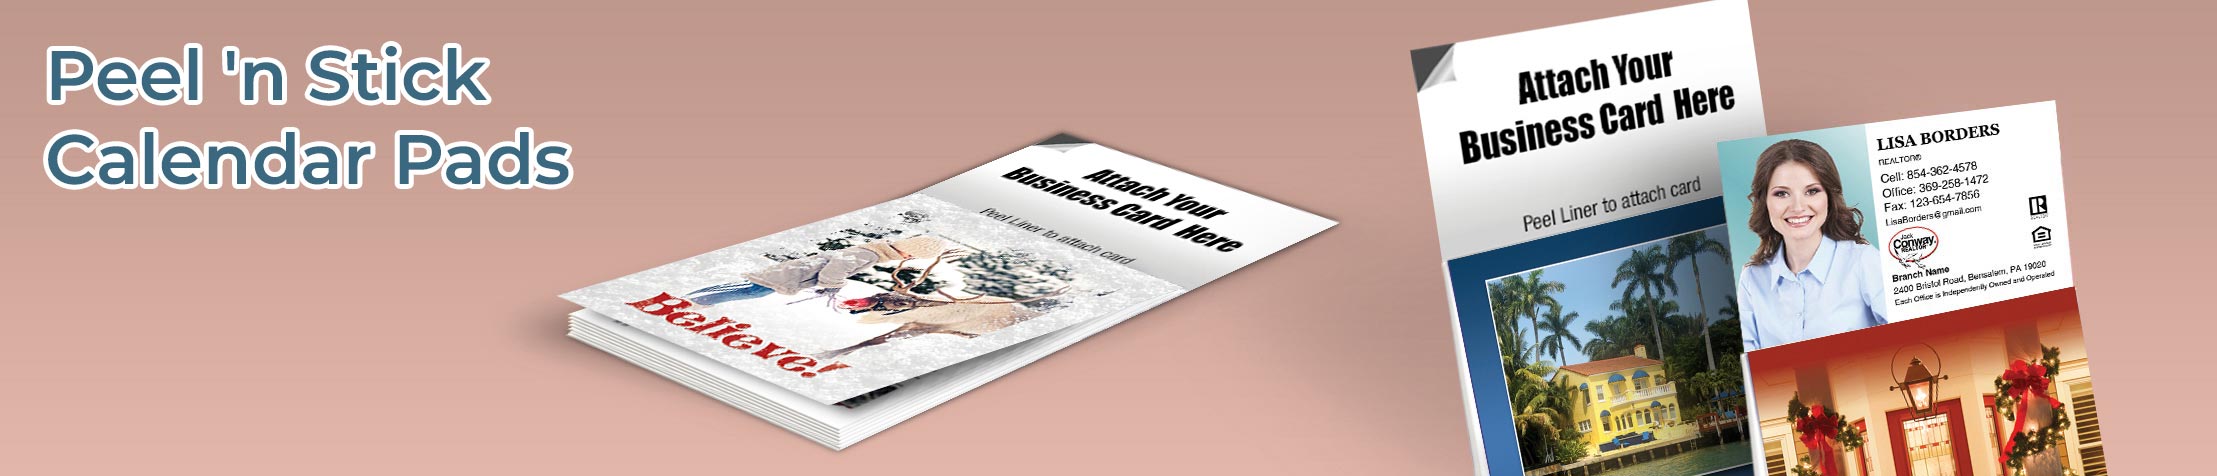 Jack Conway Realtor Real Estate Peel 'n Stick Calendar Pads - Jack Conway Realtor  2019 calendars, magnetic tear away note pads | BestPrintBuy.com